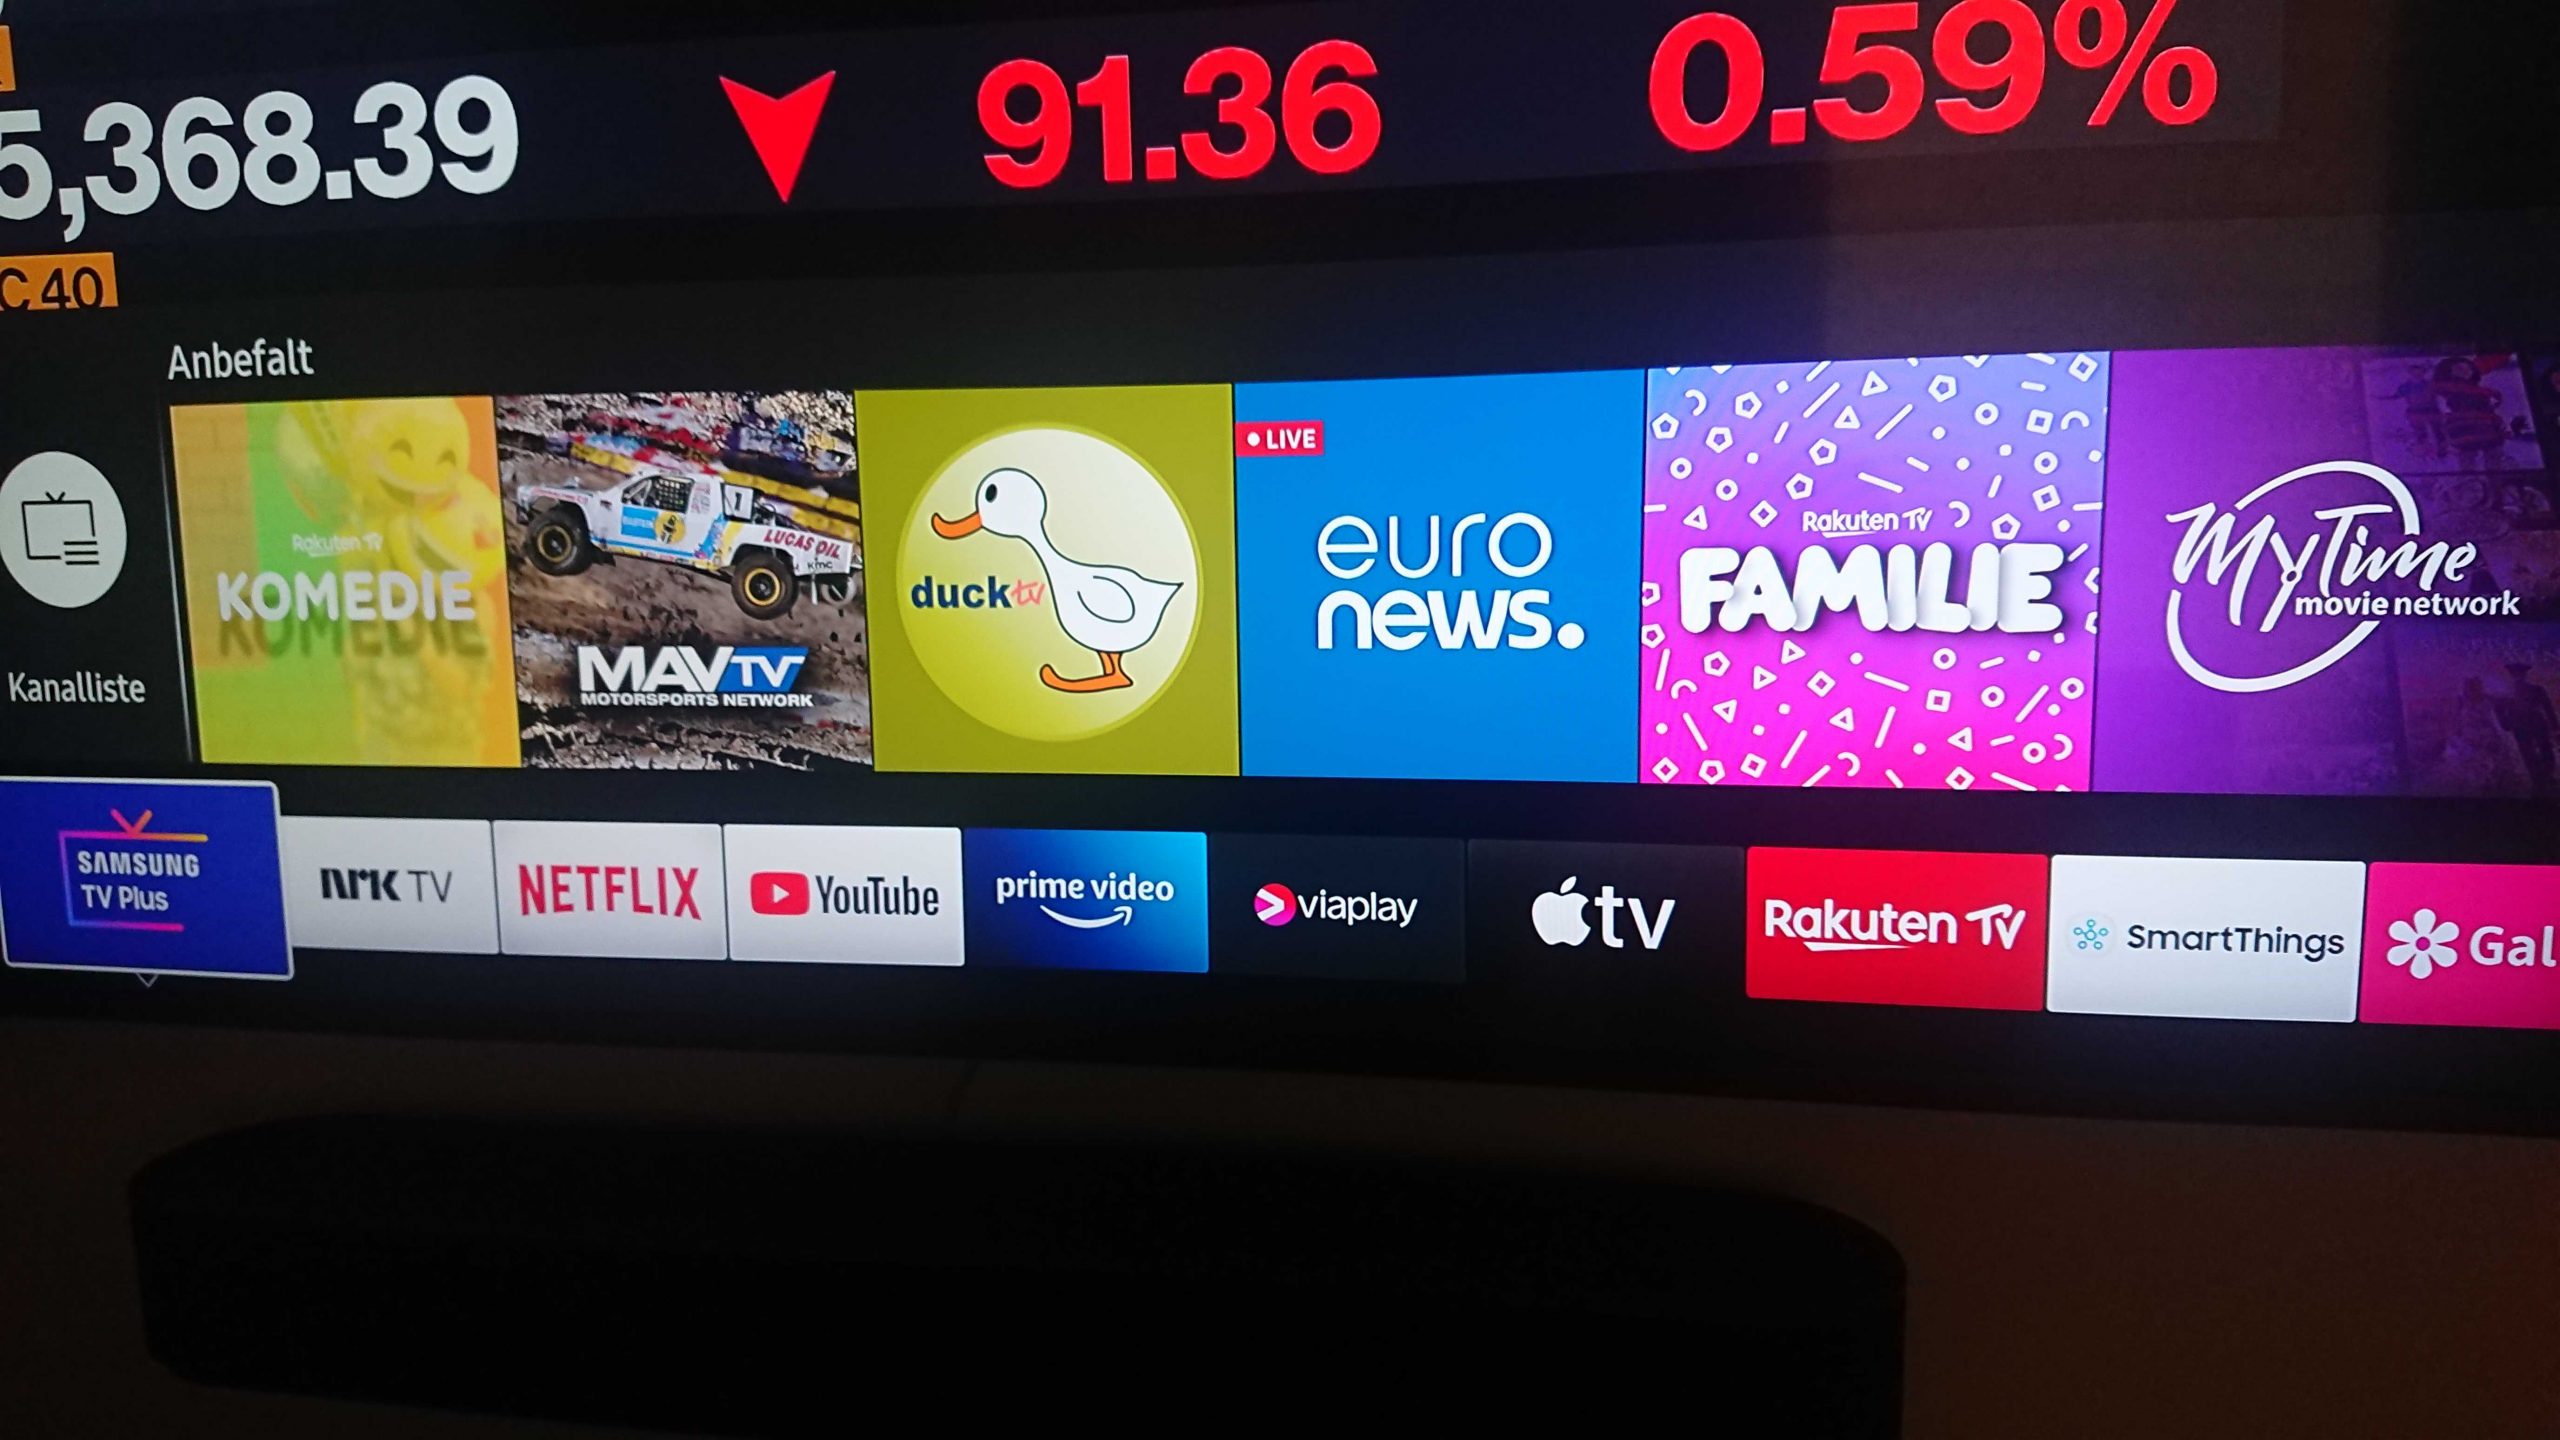 Nå er Samsung TV Plus tilgjengelig i Norge